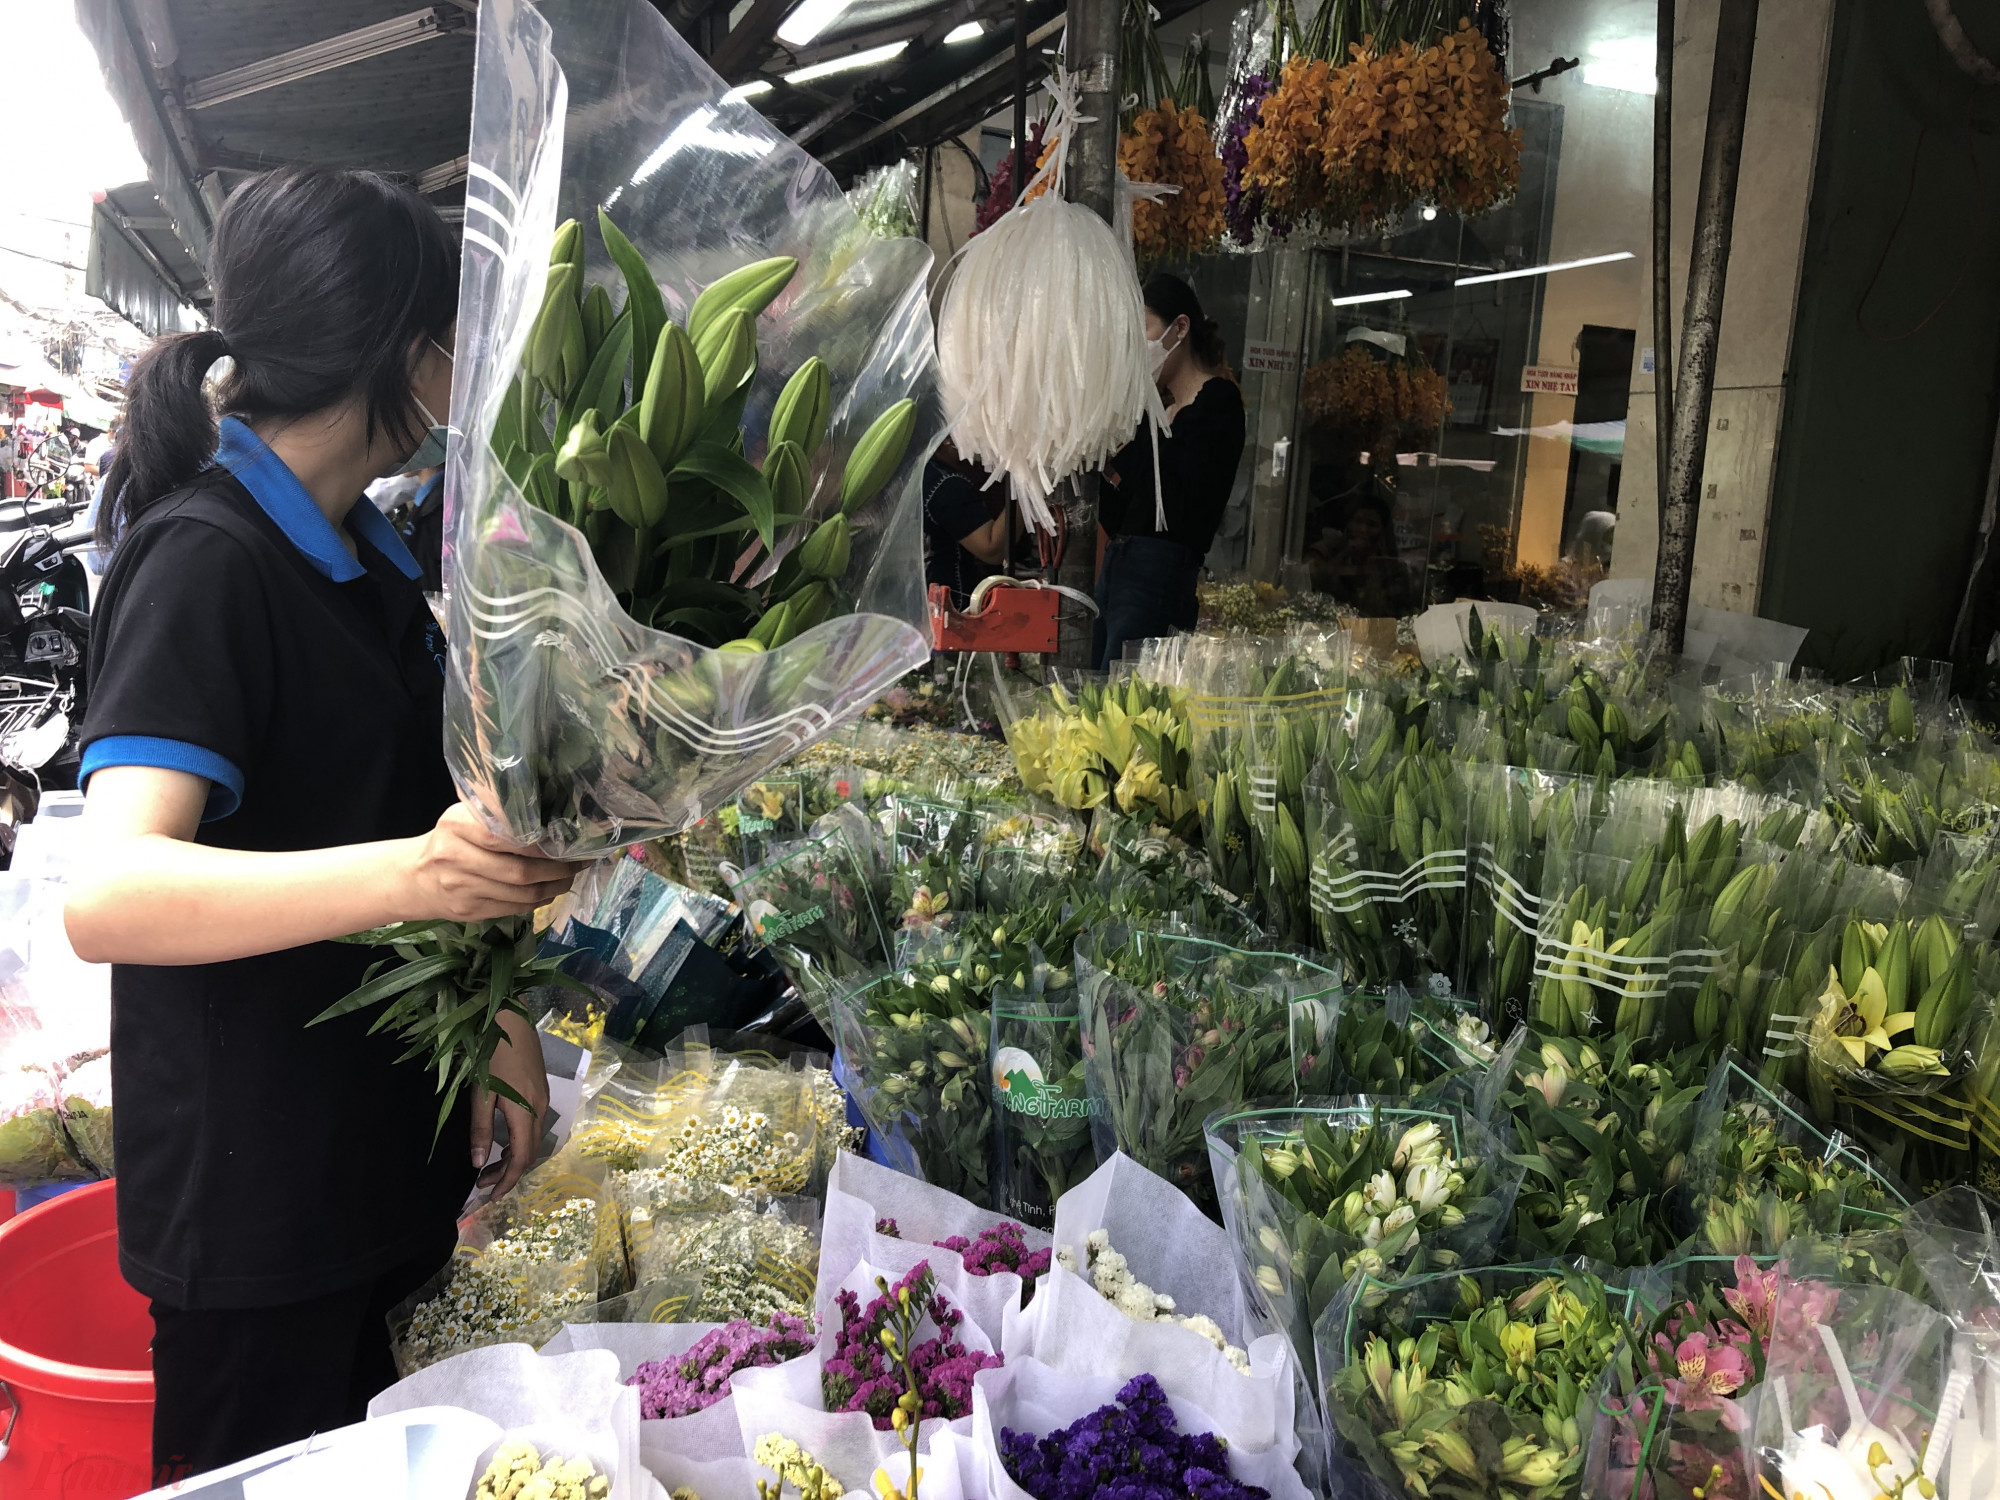 Hoa ly nhỏ tăng từ 75.000 đồng lên 90.000 đồng/bó. Năm nay chợ ít hoa ly loại lớn, màu sắc cũng không phong phú. 